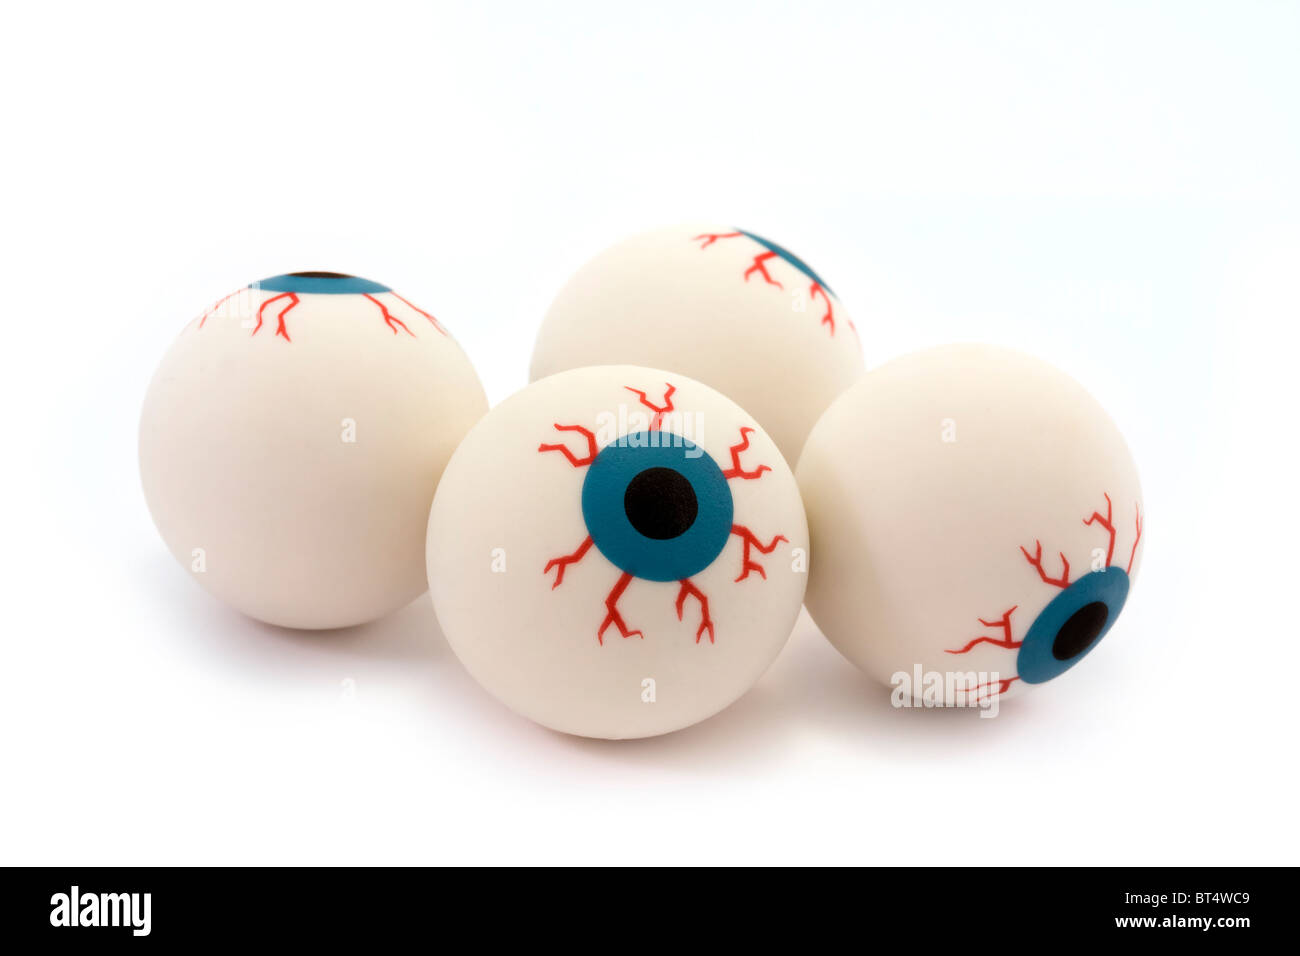 Quatre yeux jouet en caoutchouc isolé sur fond blanc Banque D'Images